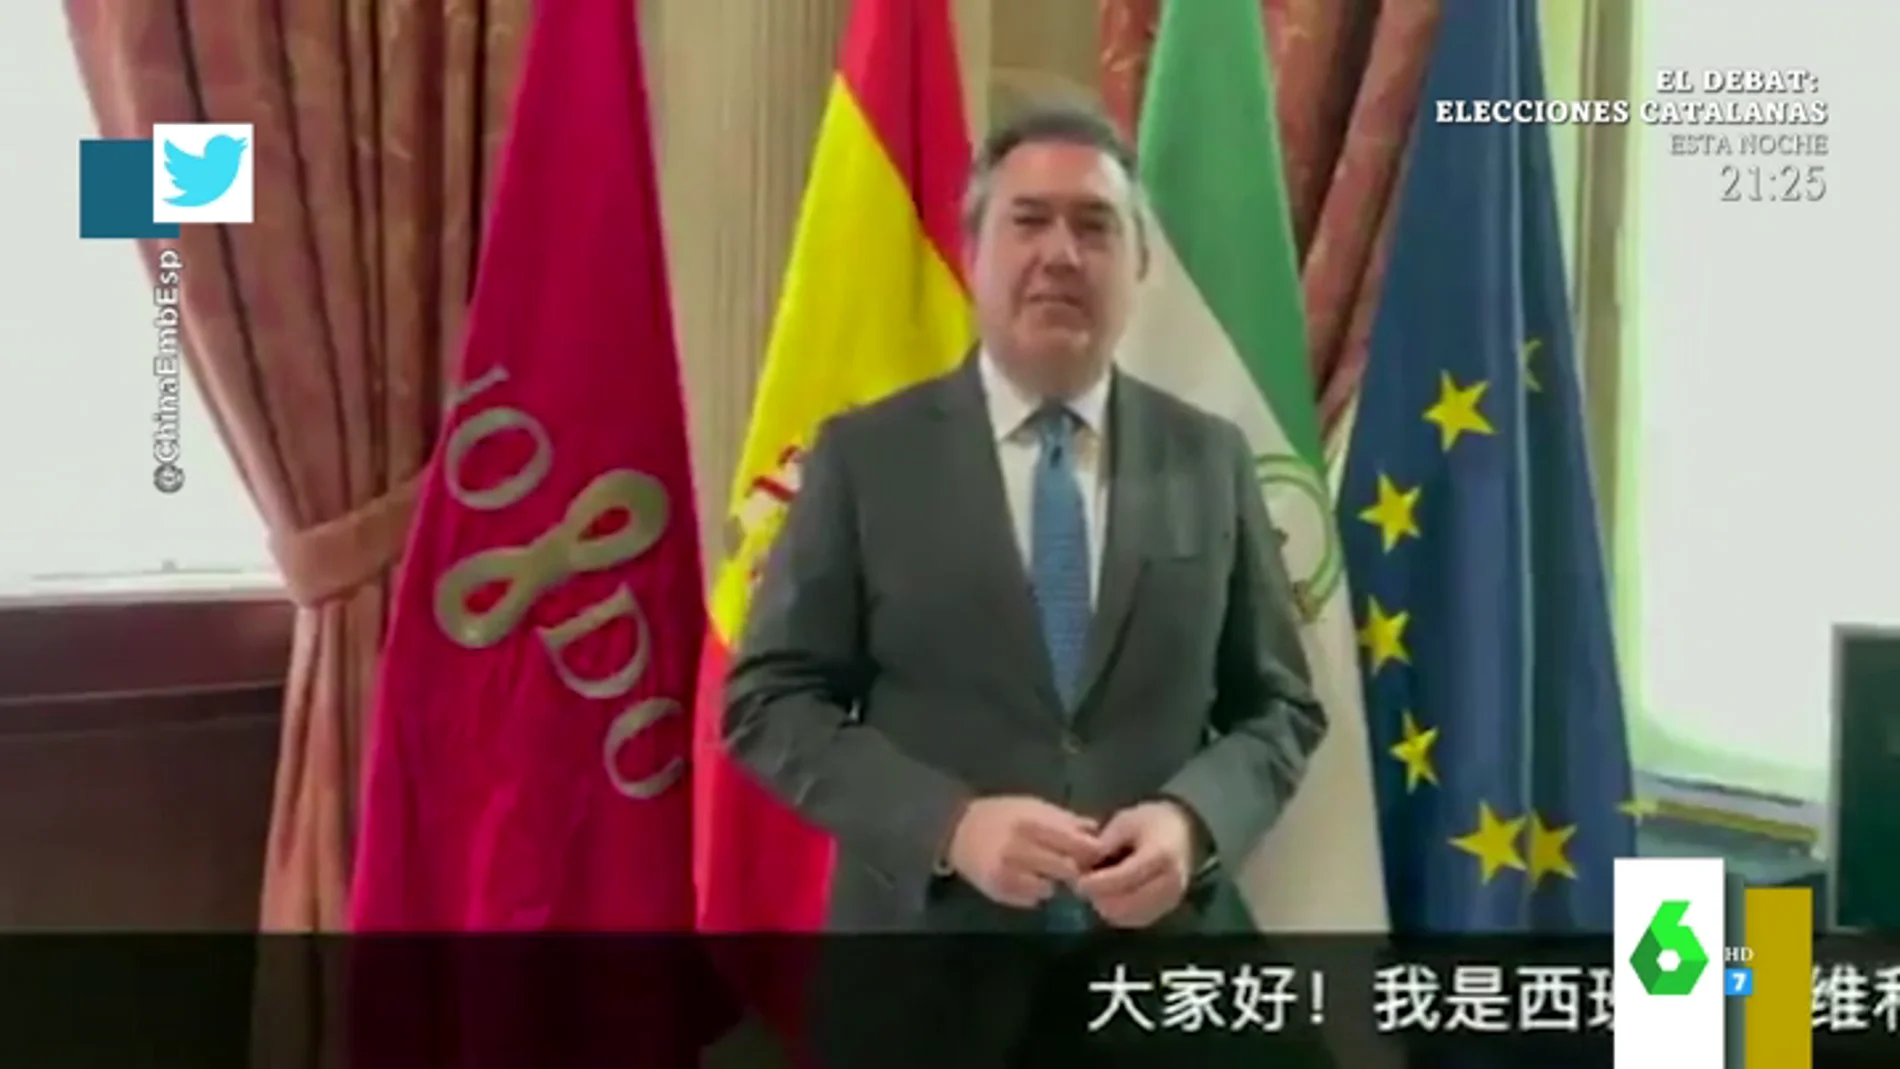 "Hola a todos, soy Juan Espadas": el vídeo viral del alcalde de Sevilla felicitando el año nuevo chino en mandarín